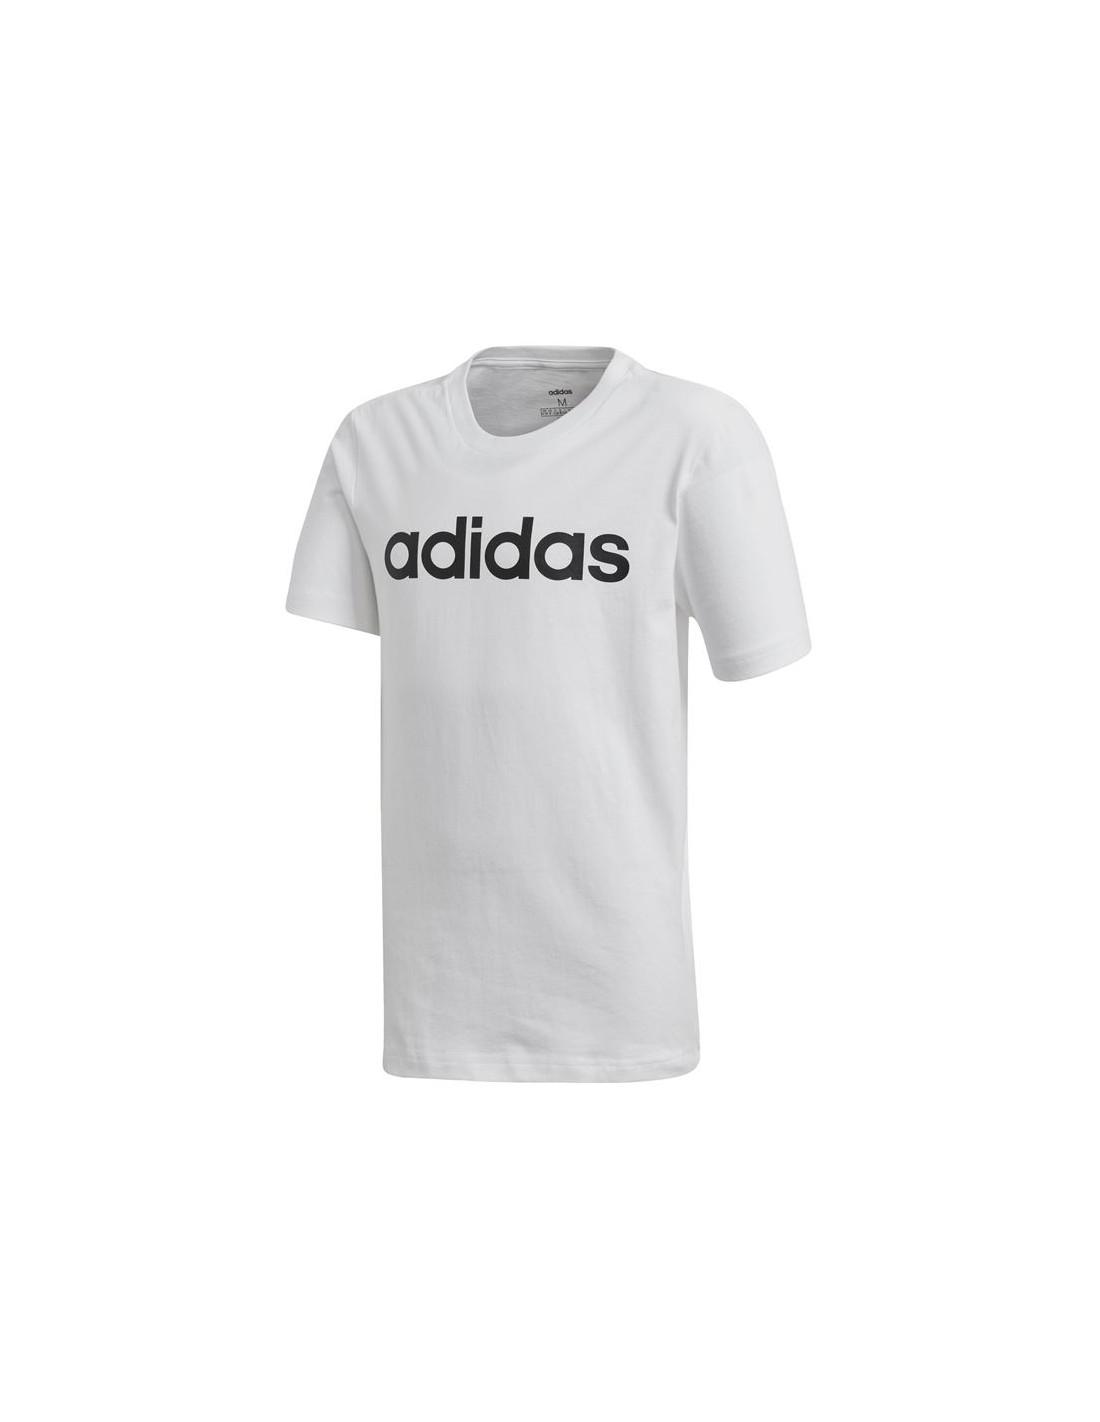 Camiseta sportswear adidas essentials linear logo